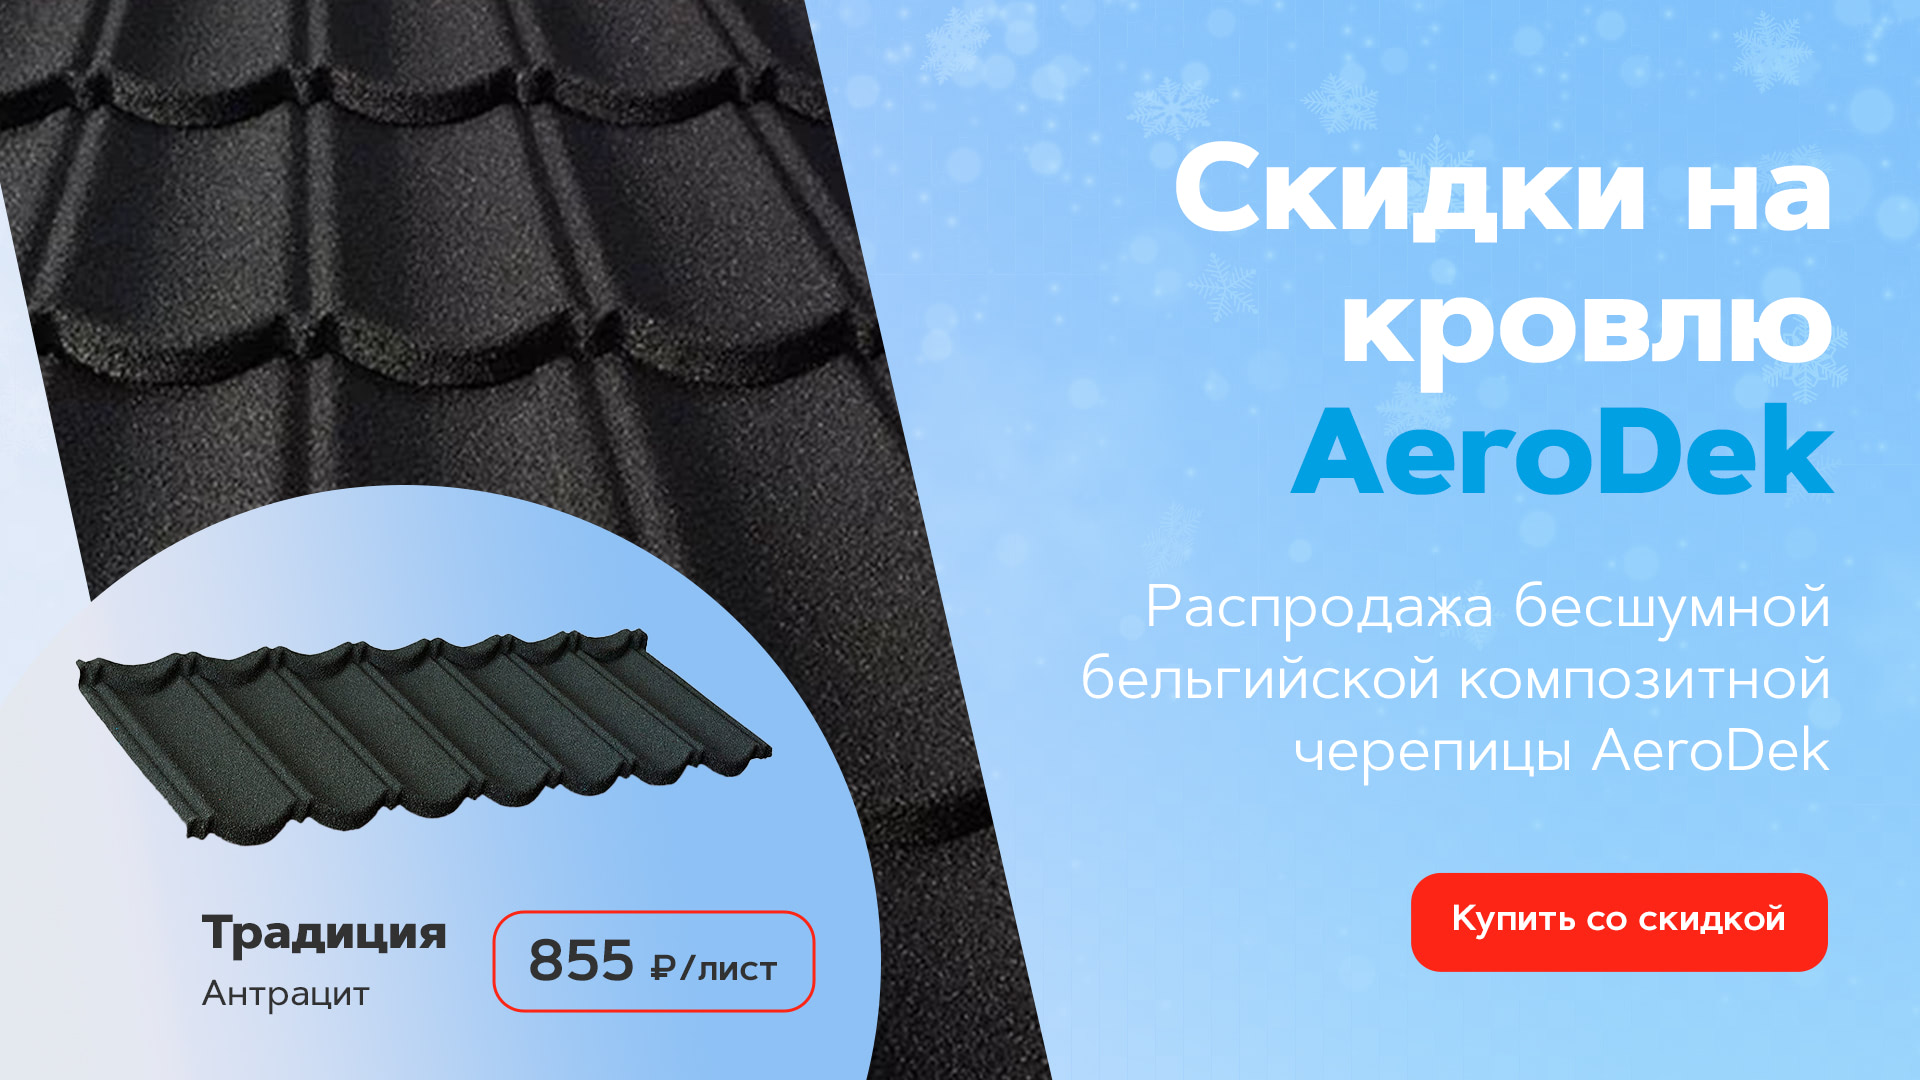 Распродажа композитной черепицы AeroDek от 855 рублей за лист